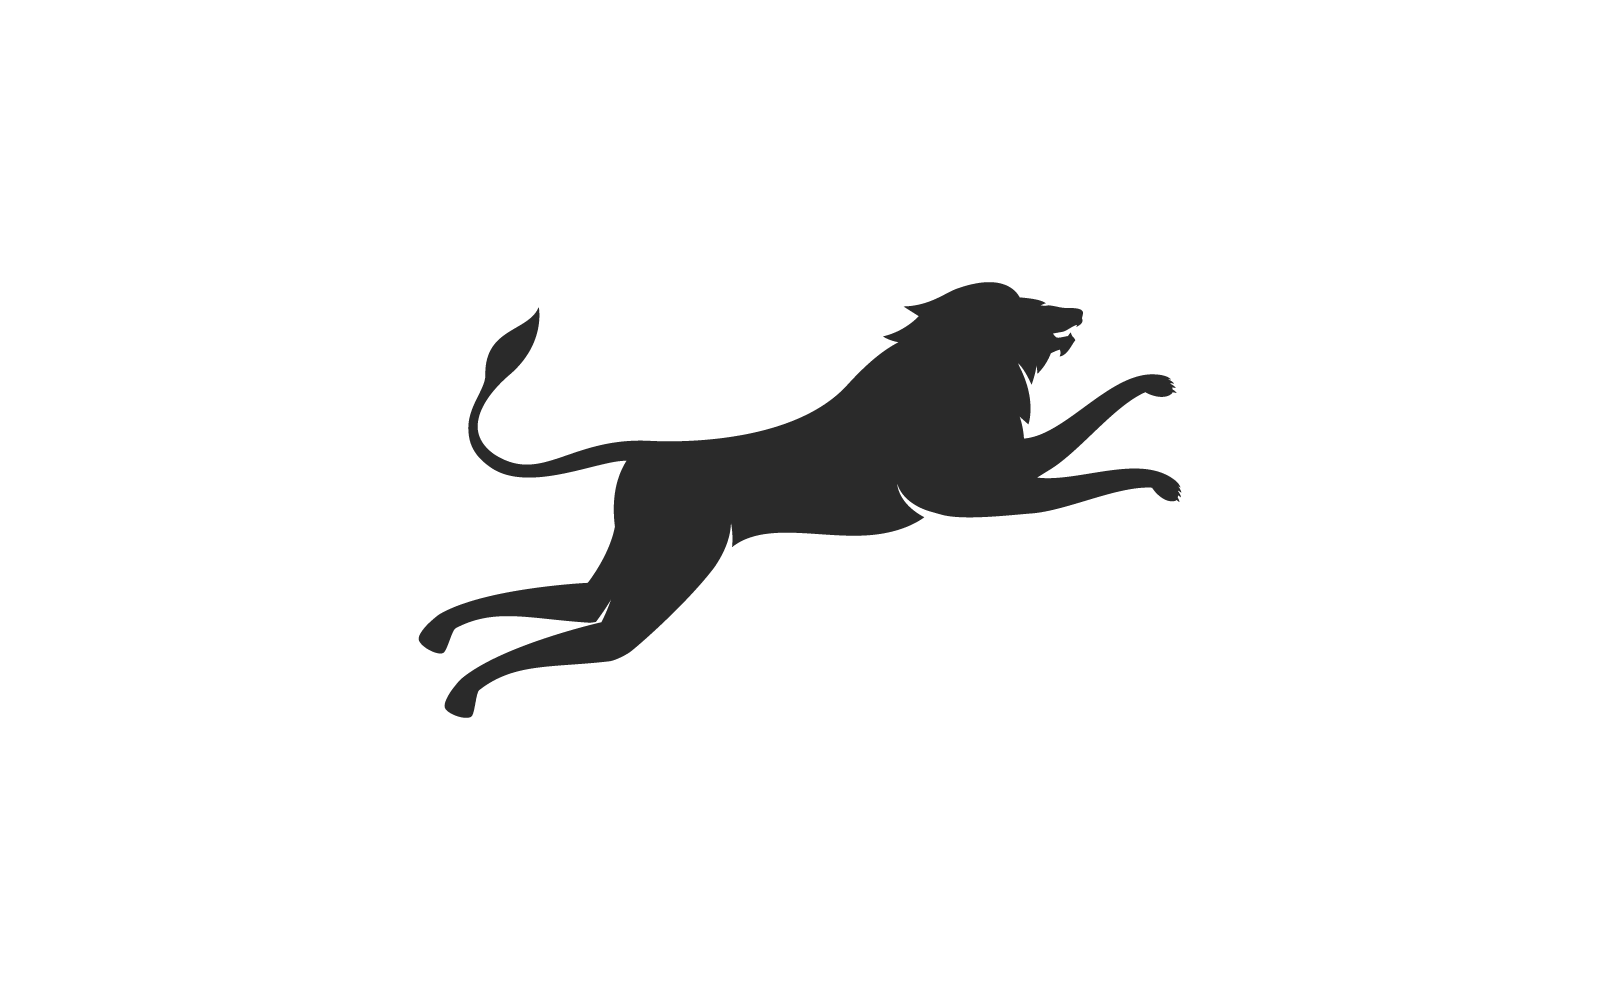 Lion illustration logo flat design template